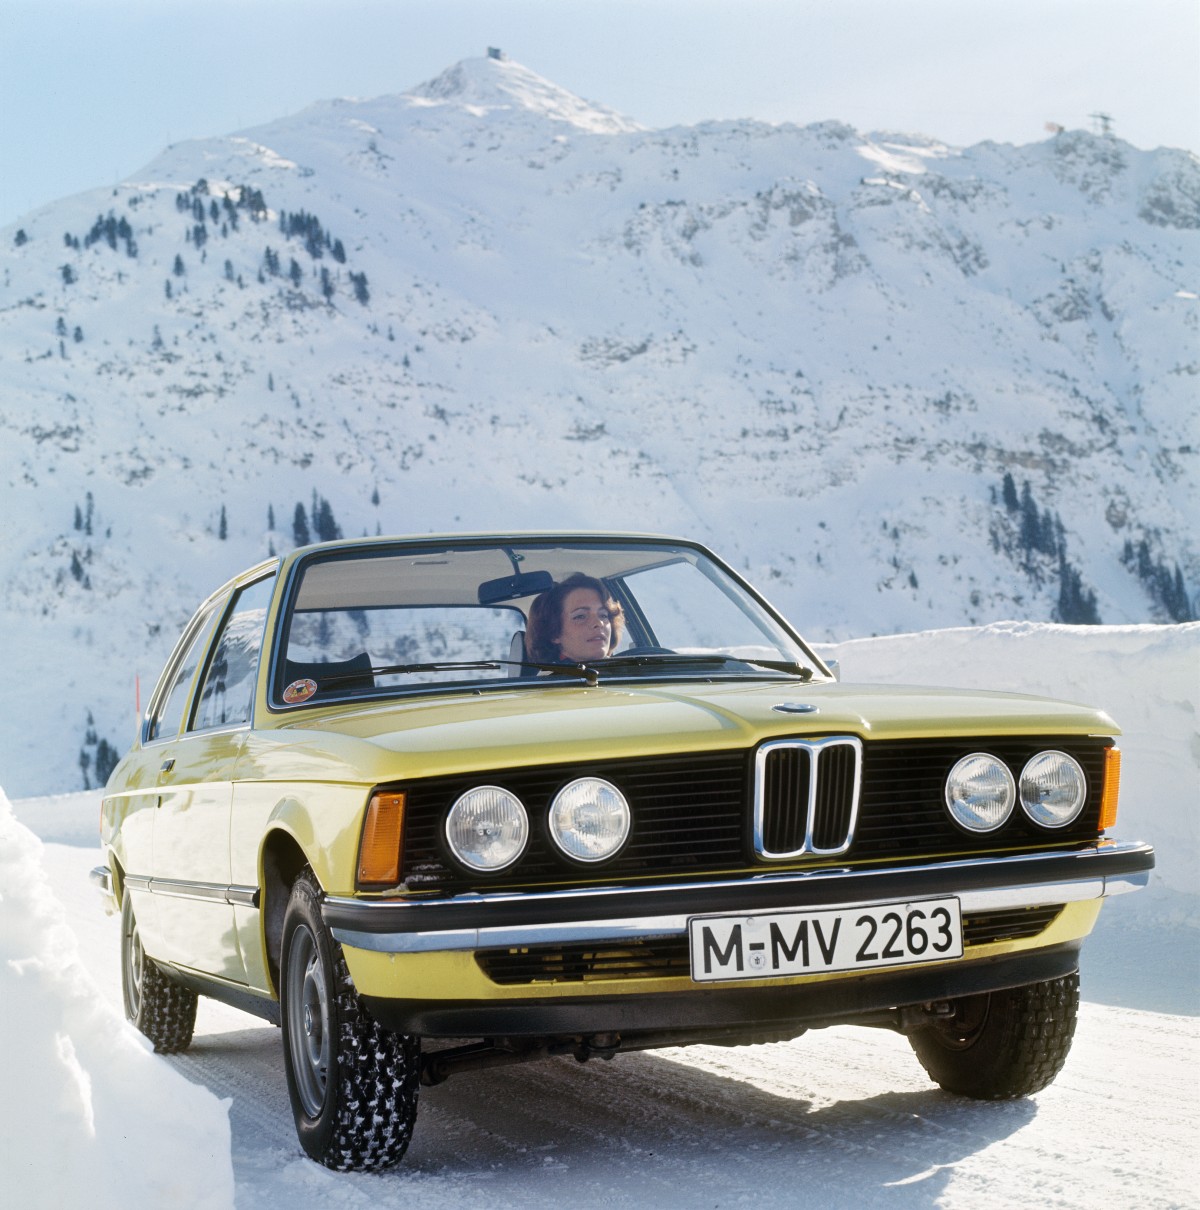 Lịch sử lưới tản nhiệt hình quả thận của BMW, những điều chưa biết - Ảnh 5.